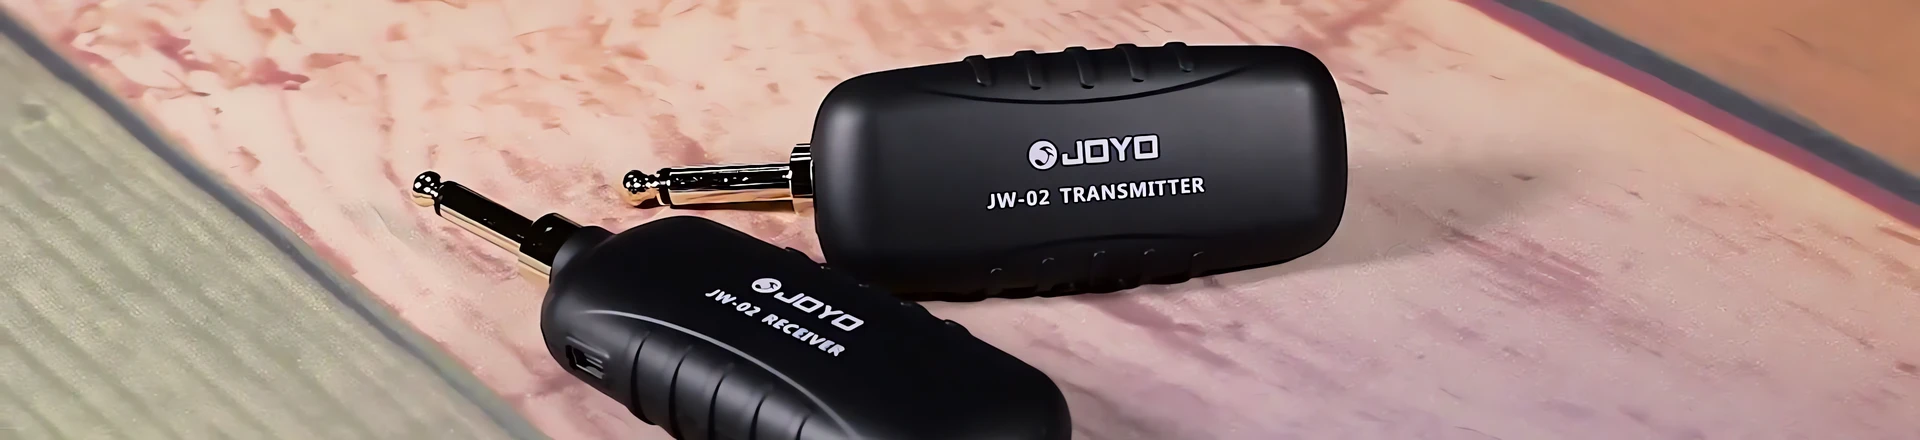 Joyo Audio przedstawia zestaw bezprzewodowy JW-02 